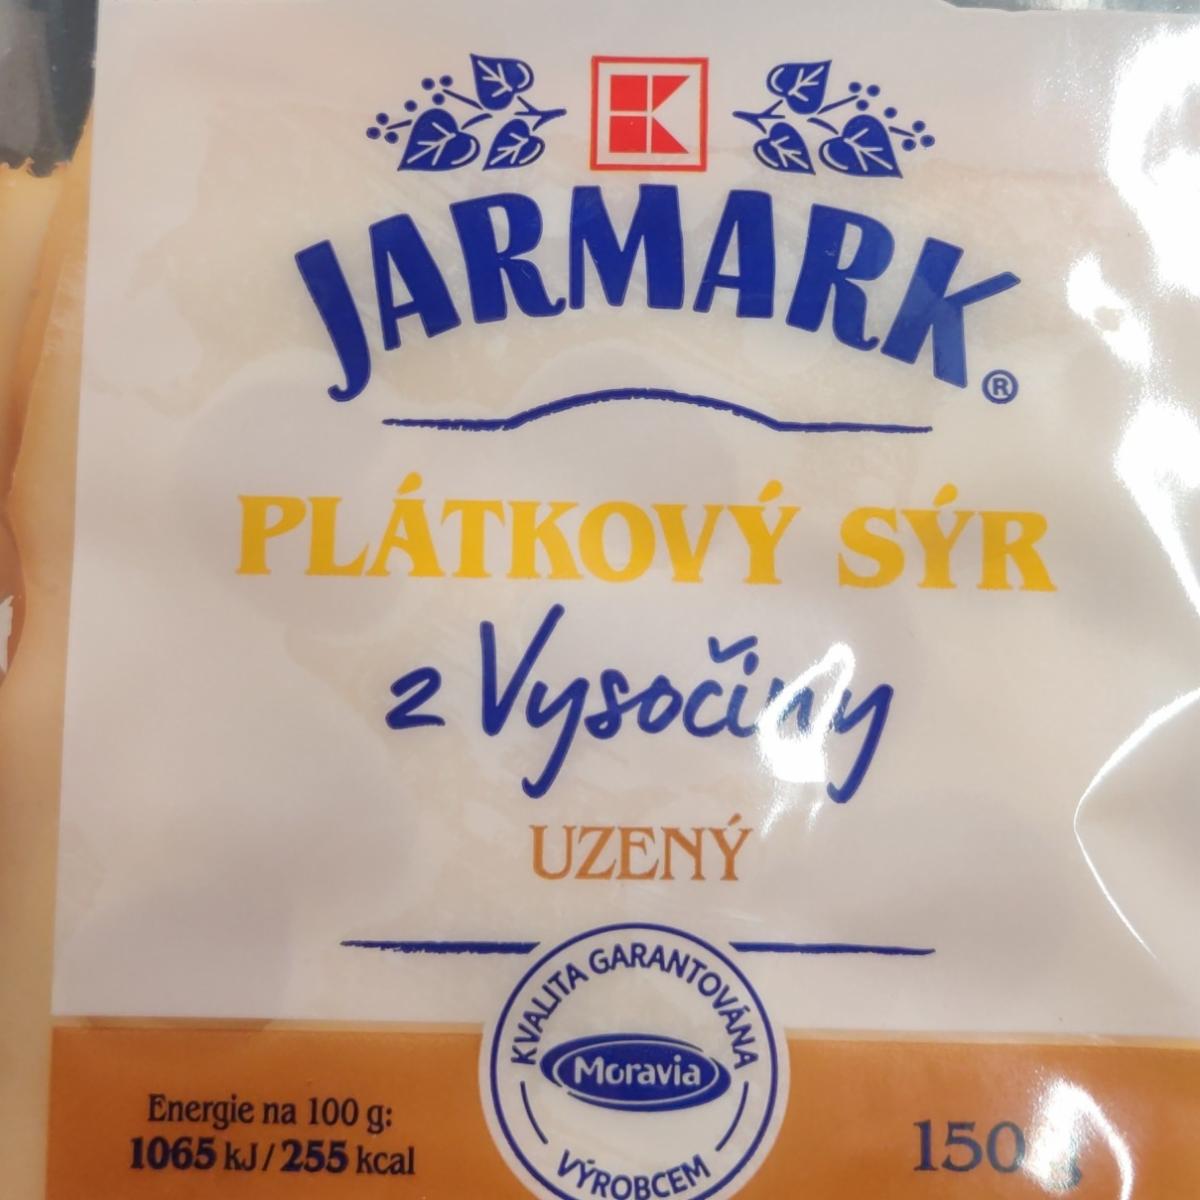 Zdjęcia - Plátkový sýr z Vysočiny uzený K-Jarmark